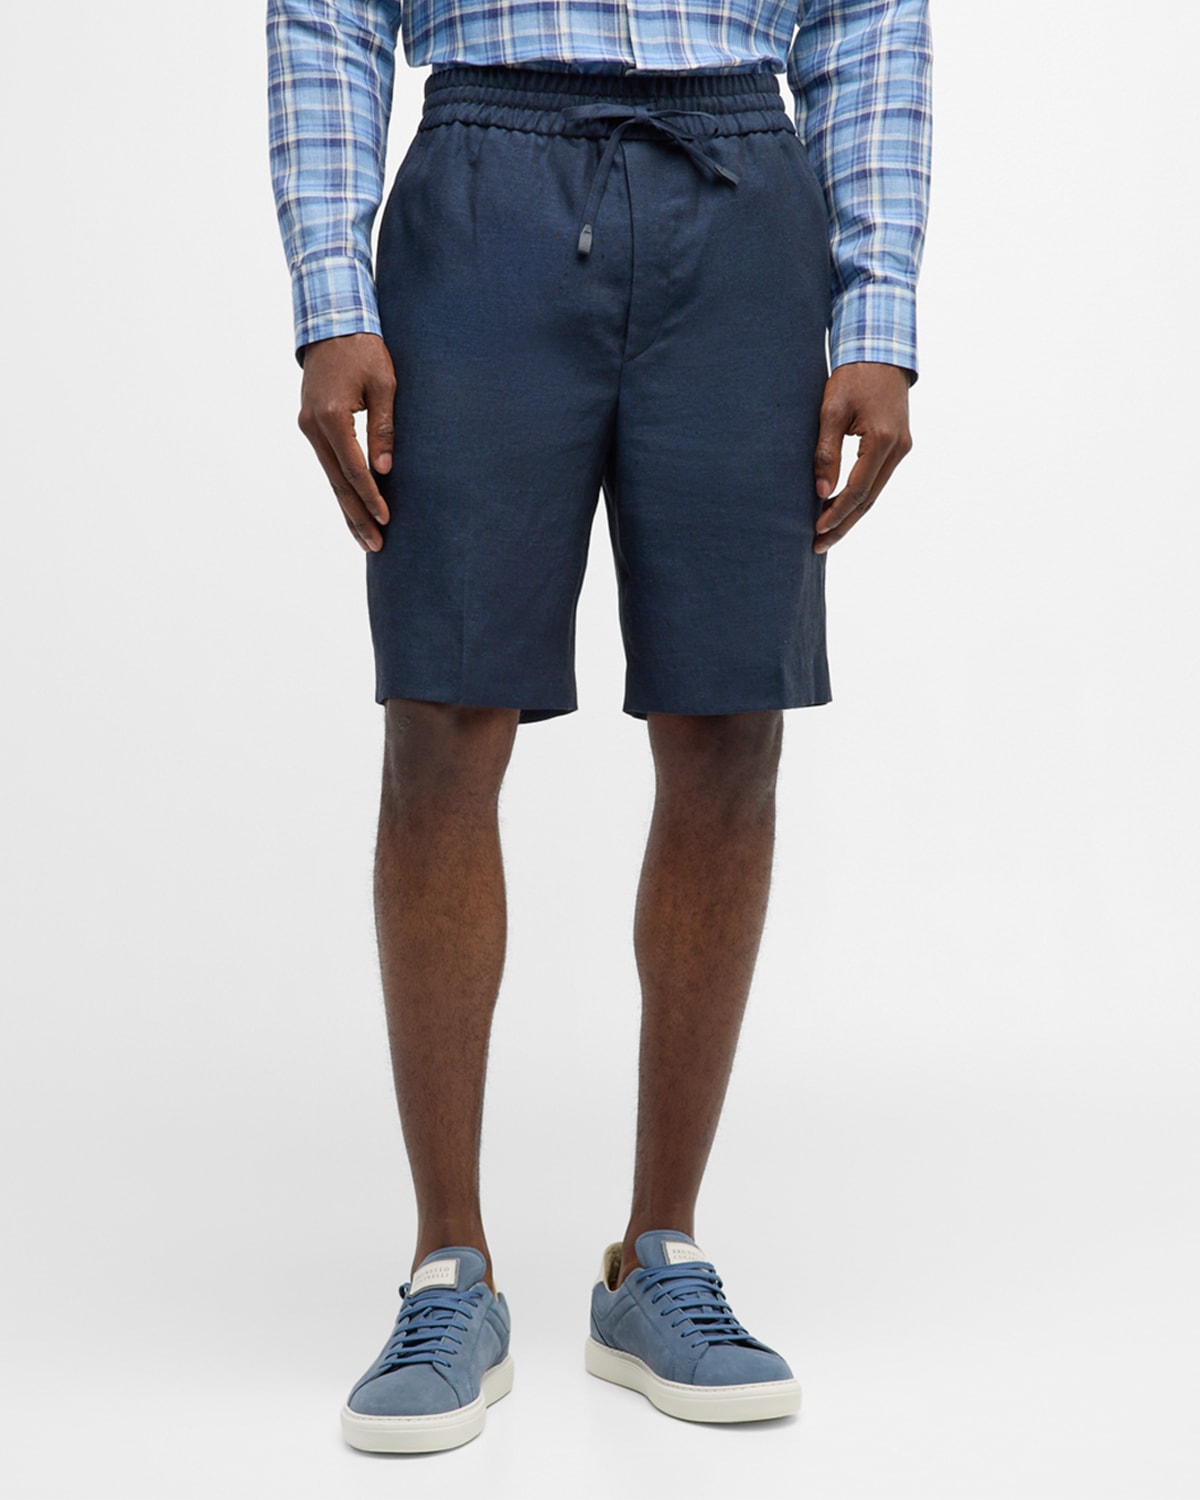 Men's Linen Pull-On Drawstring Shorts